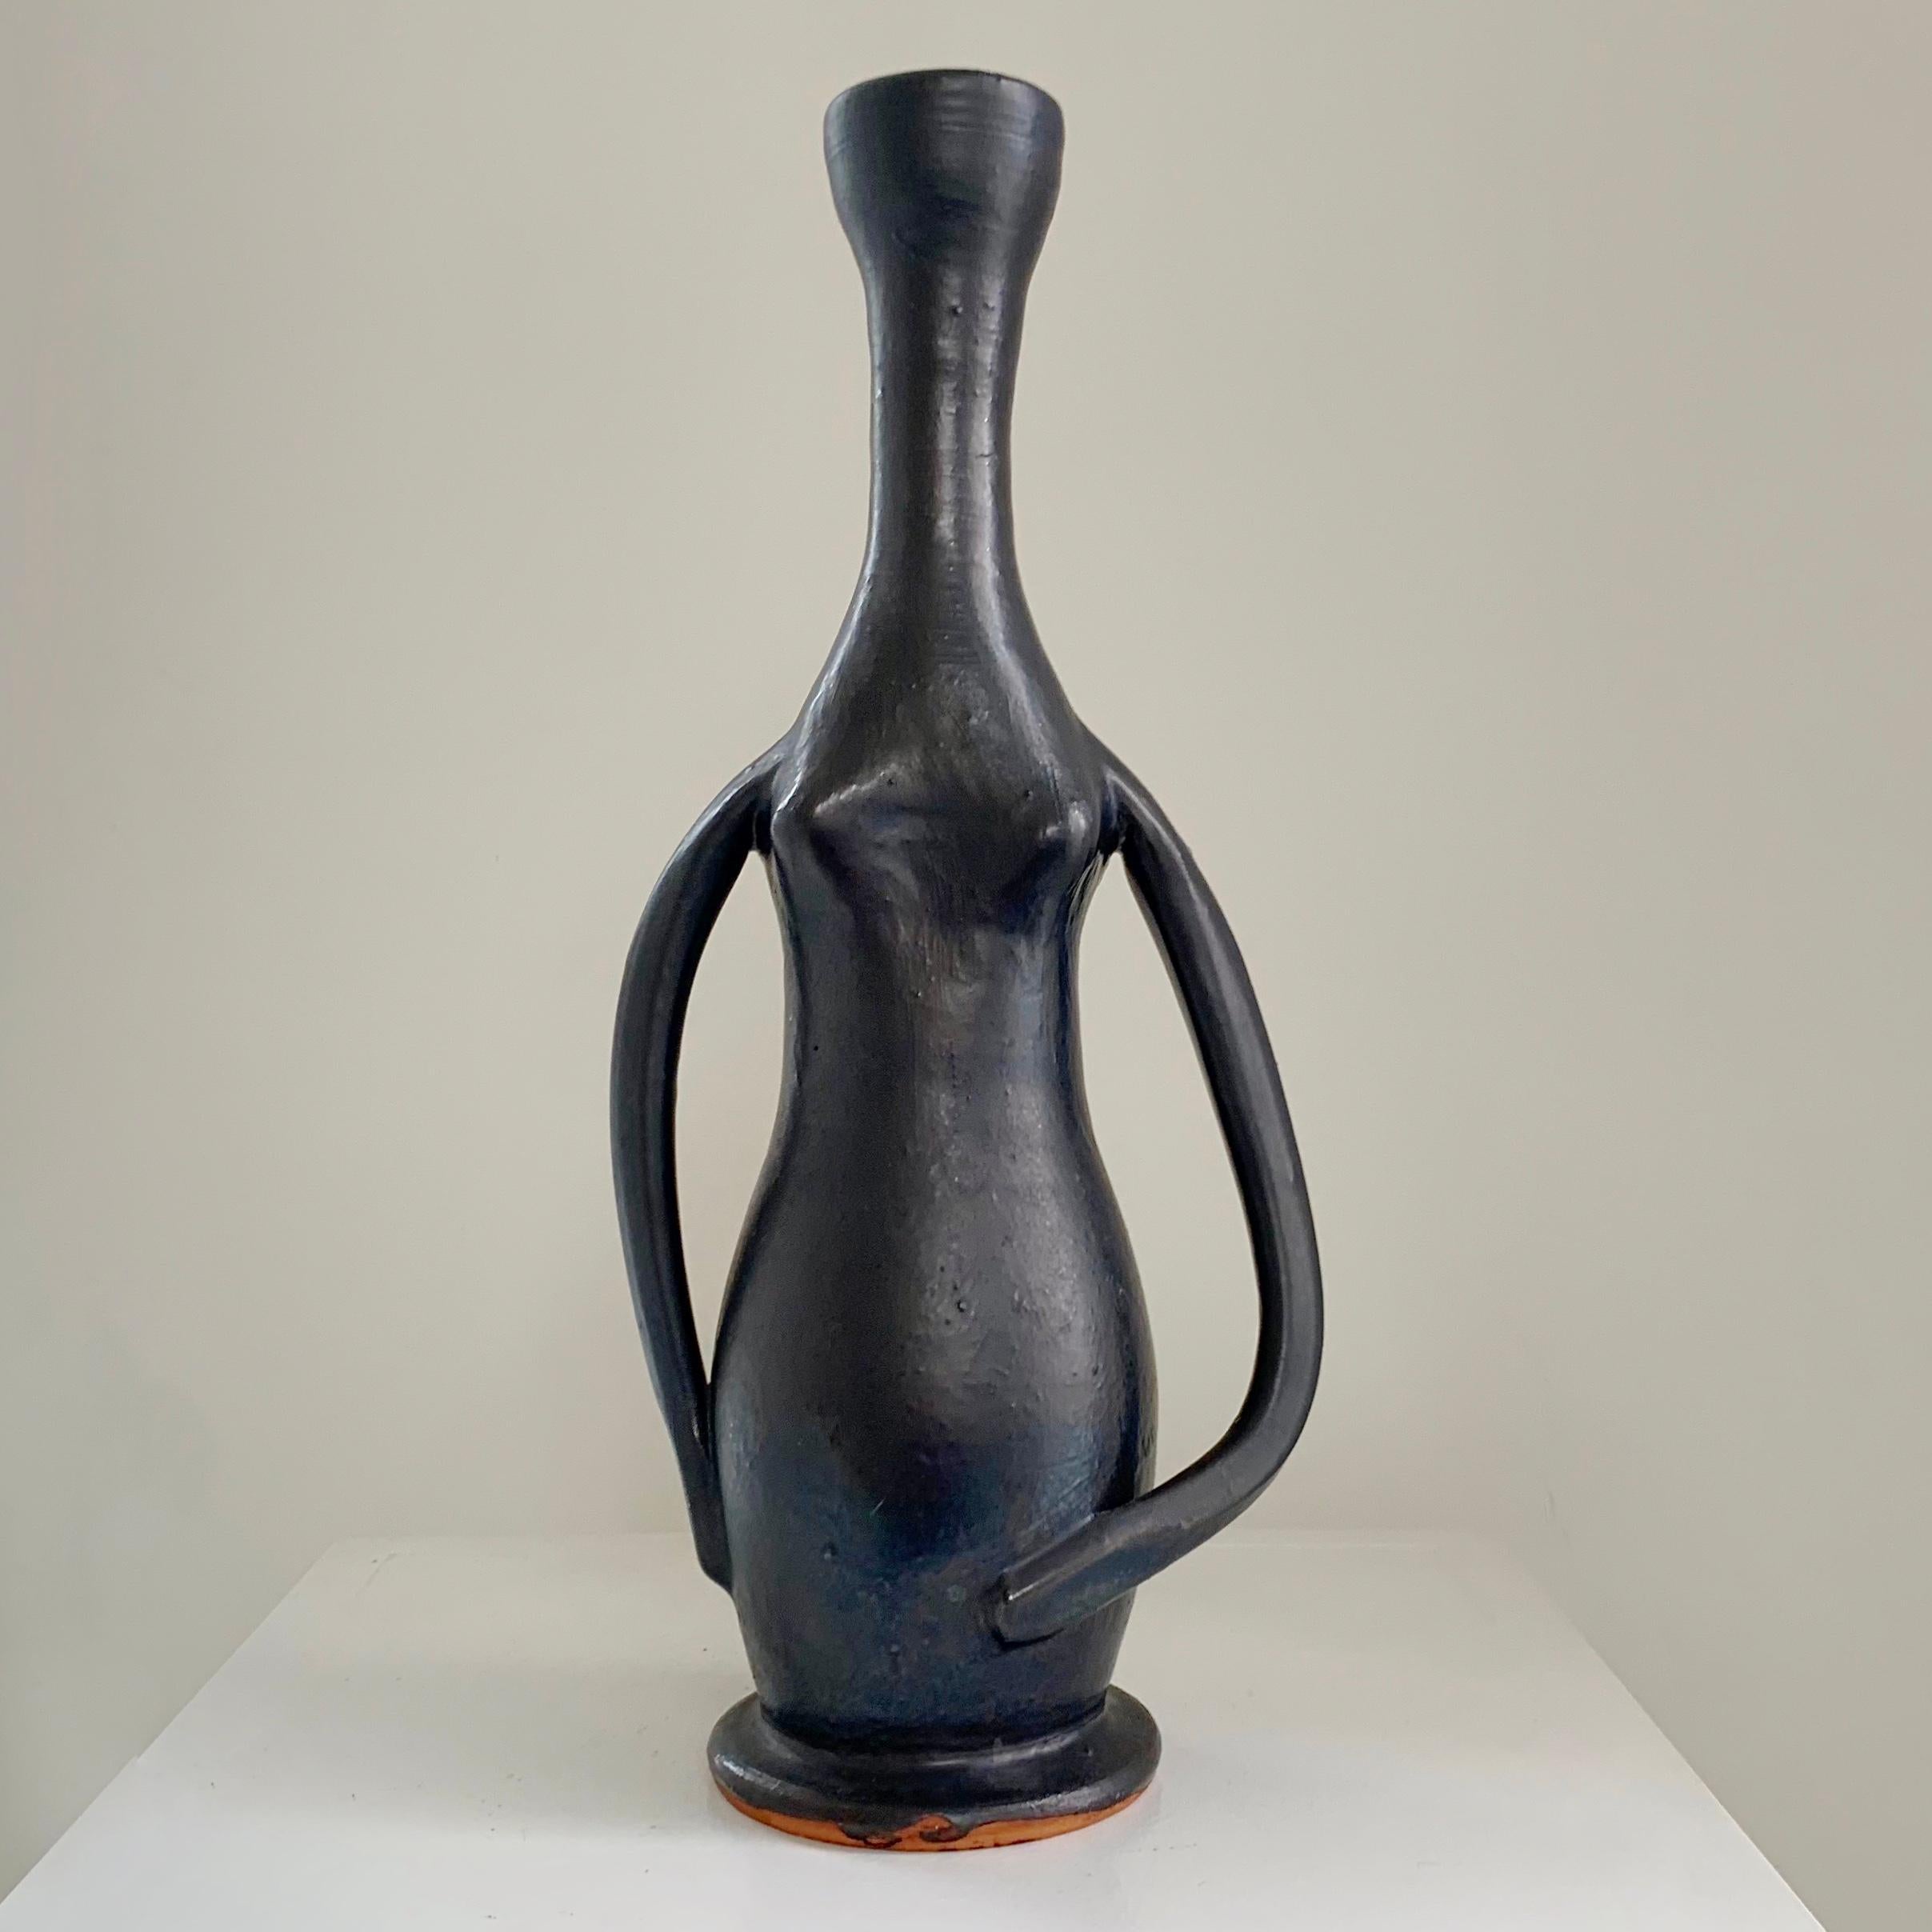 Schöne antropomorphe Vase von Guillaume Met De Penninghen, um 1950, Frankreich.
Schwarz emaillierter Sandstein.
Abmessungen: 32 cm H, 14 cm B, 8 cm T.
Seltene Keramik in gutem Originalzustand.
Alle Käufe sind durch unsere Käuferschutzgarantie